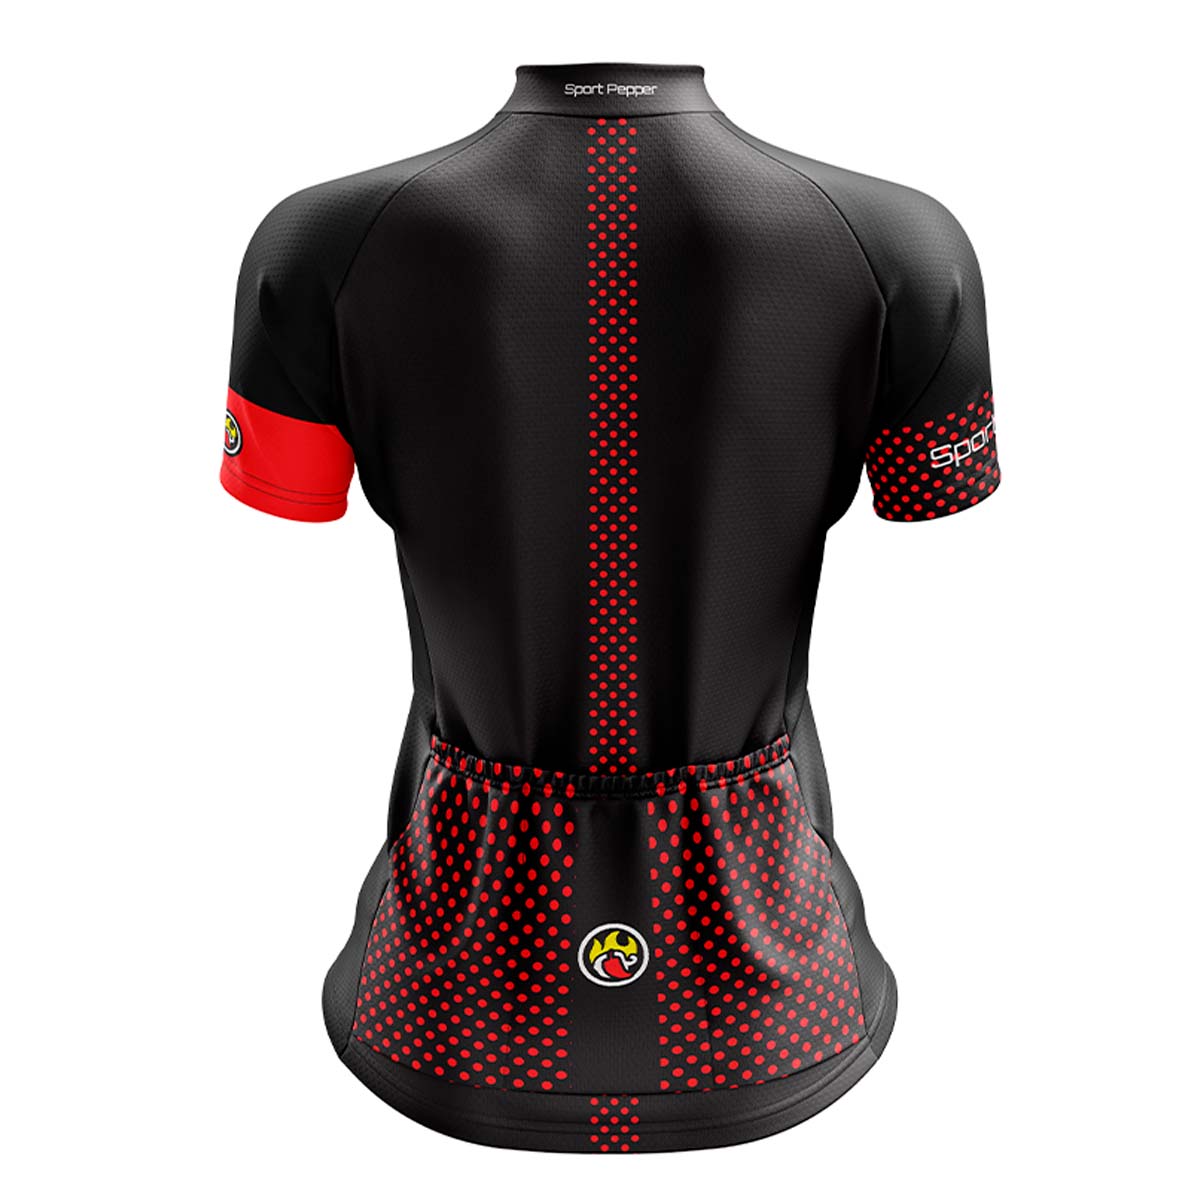 Camisa Sport Pepper Feminina Cherry Vermelha e Preta Ciclismo 22